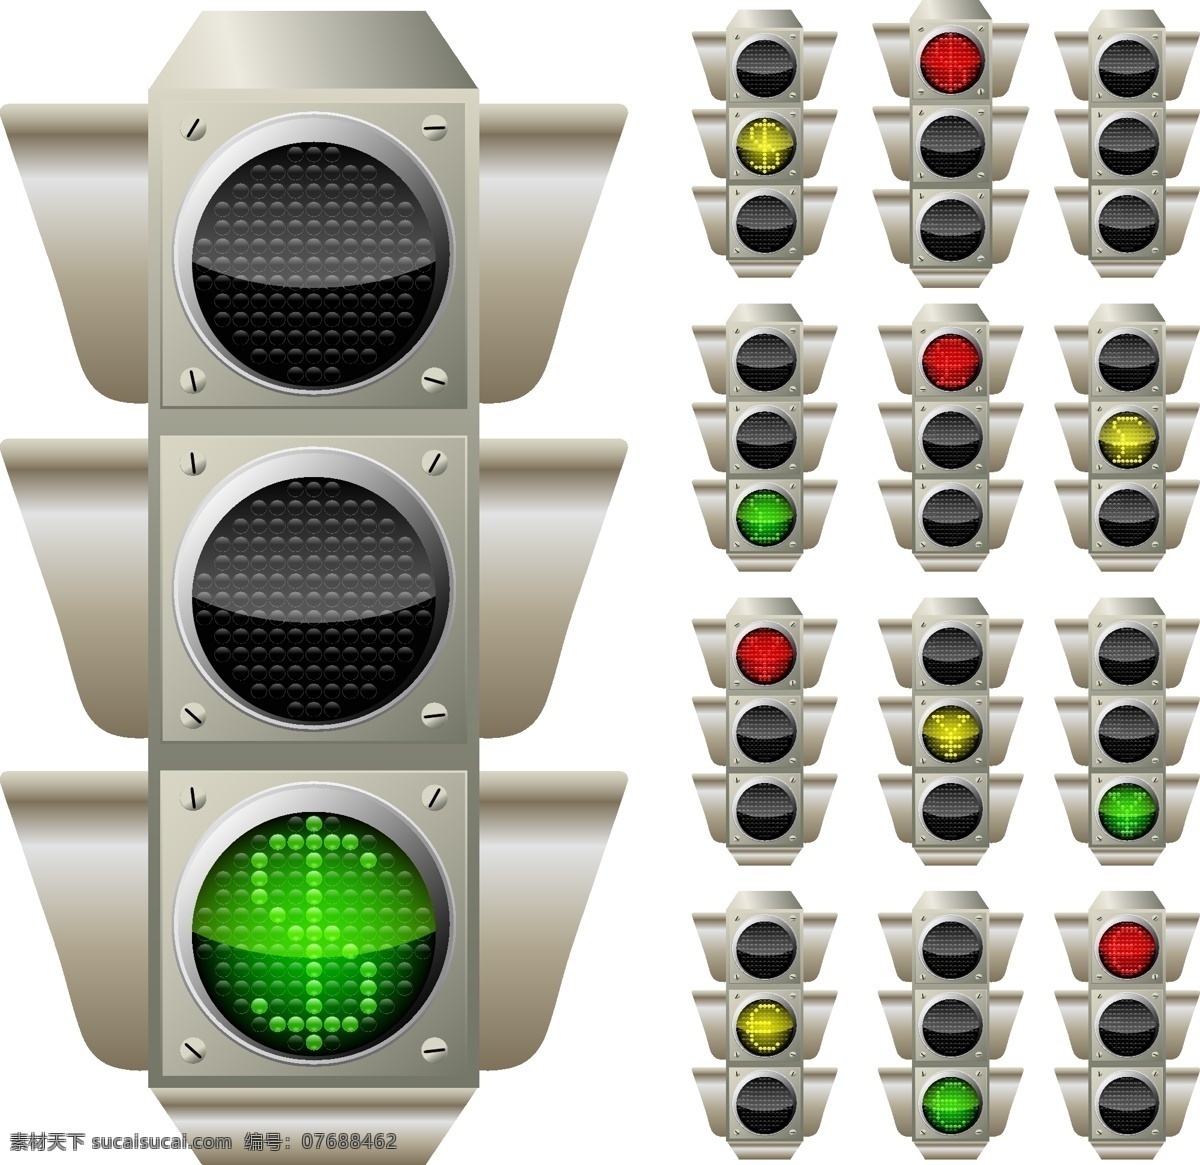 红绿灯 图案 矢量 模板下载 红绿灯图标 红灯 绿灯 黄灯 马路灯 交通灯 生活百科 矢量素材 白色